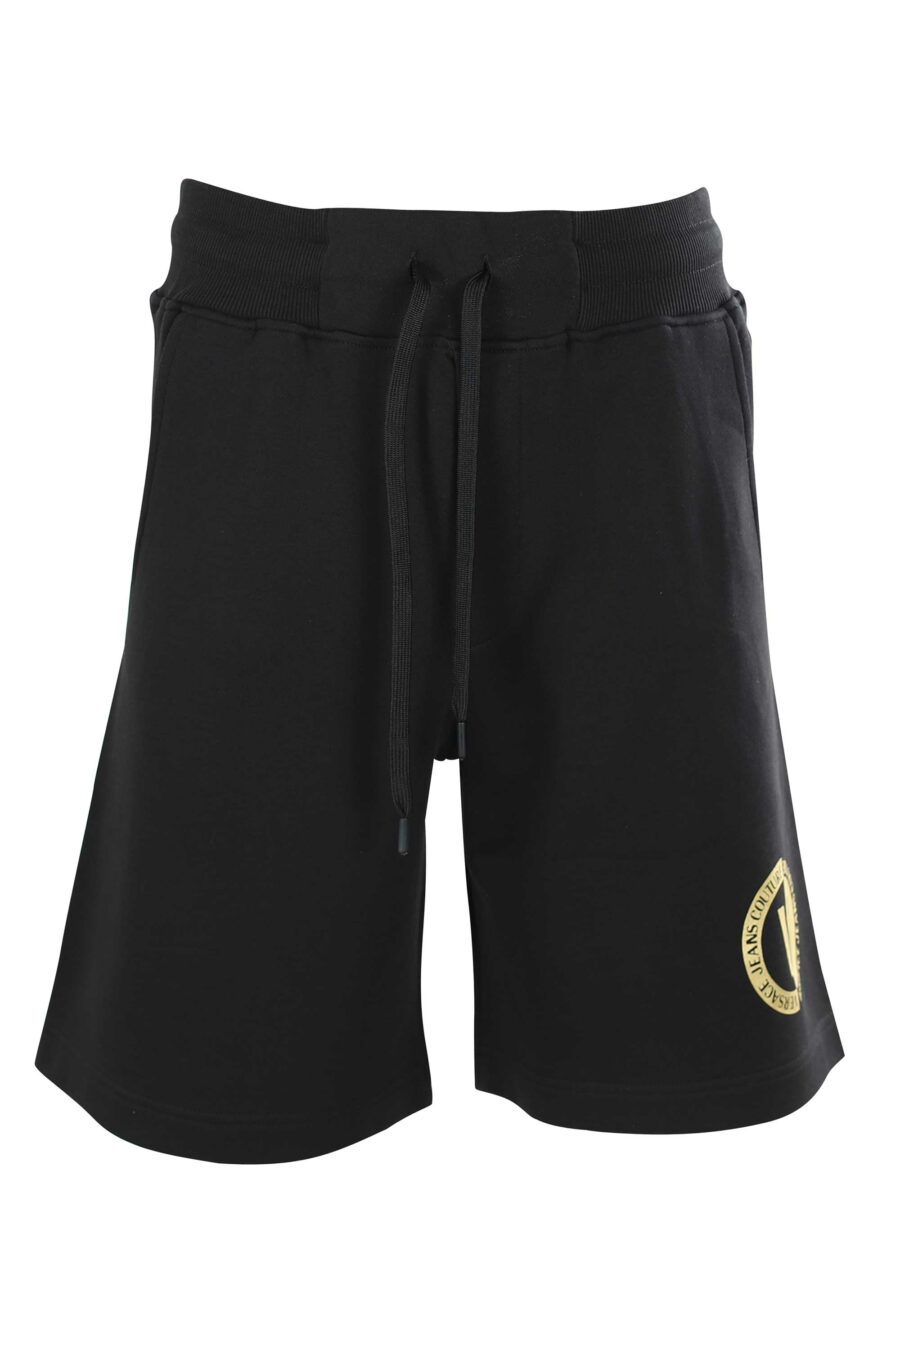 Pantalón de chándal corto negro con minilogo redondo - 8052019230420